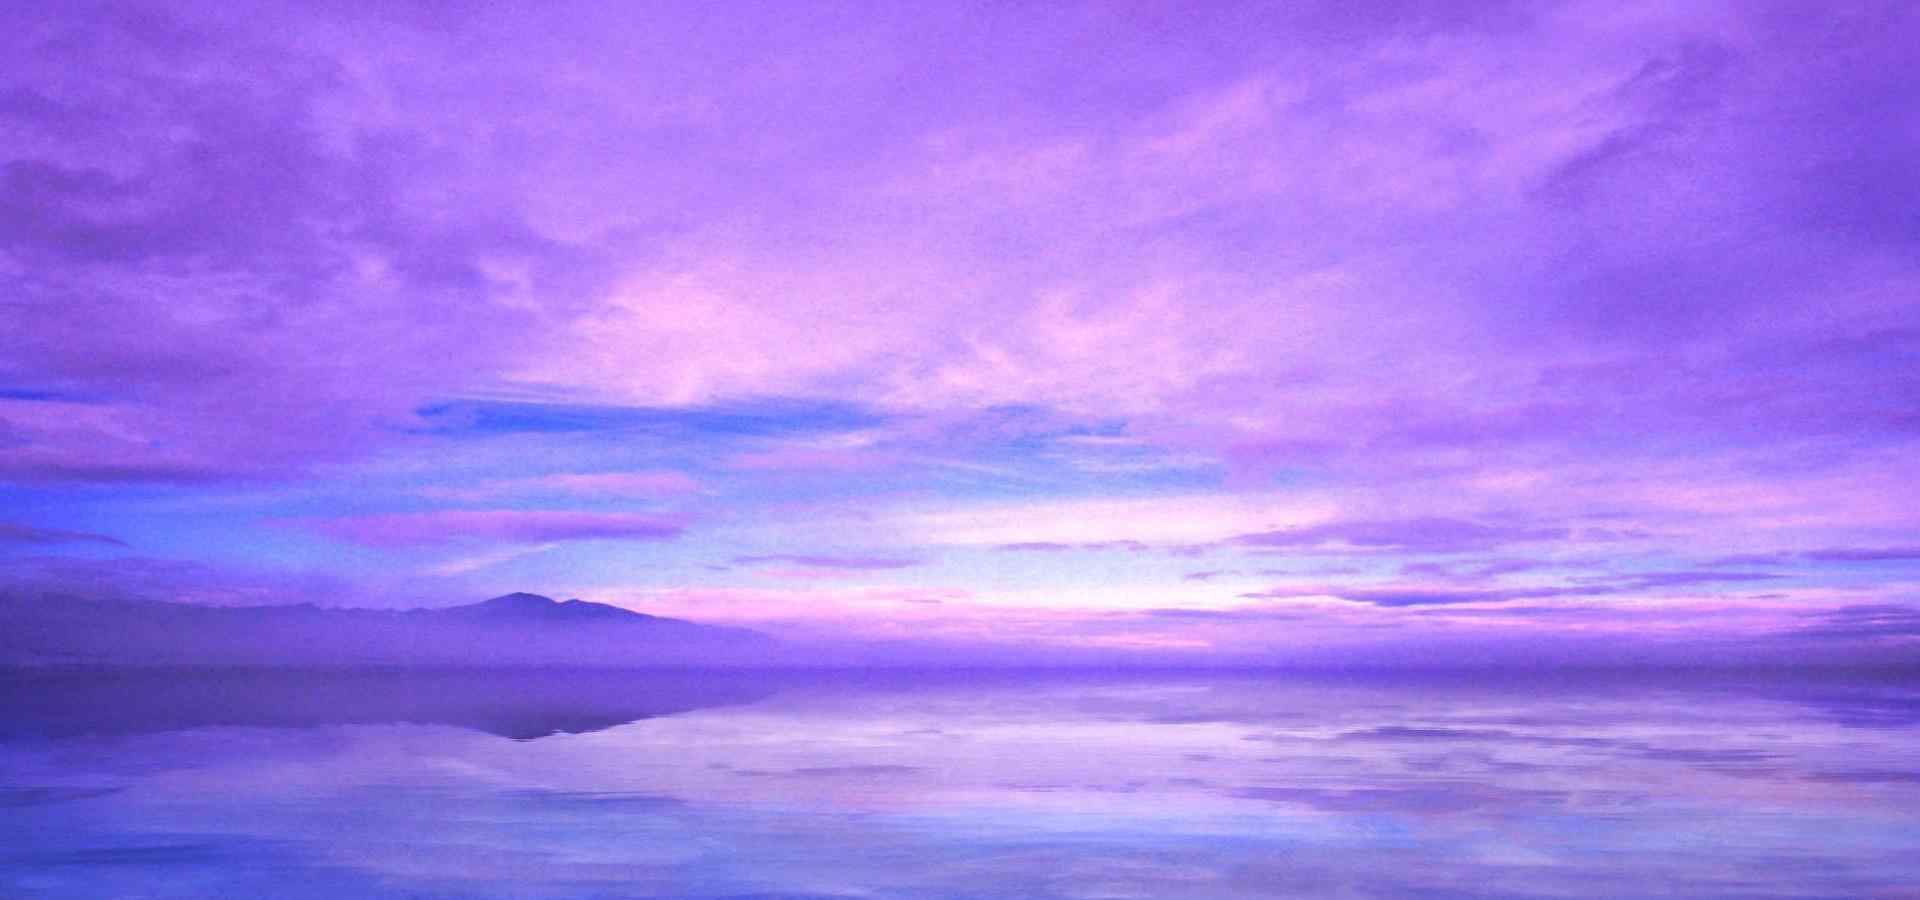 Purple Horizon Landscape Wallpapers - Wallpaper Cave